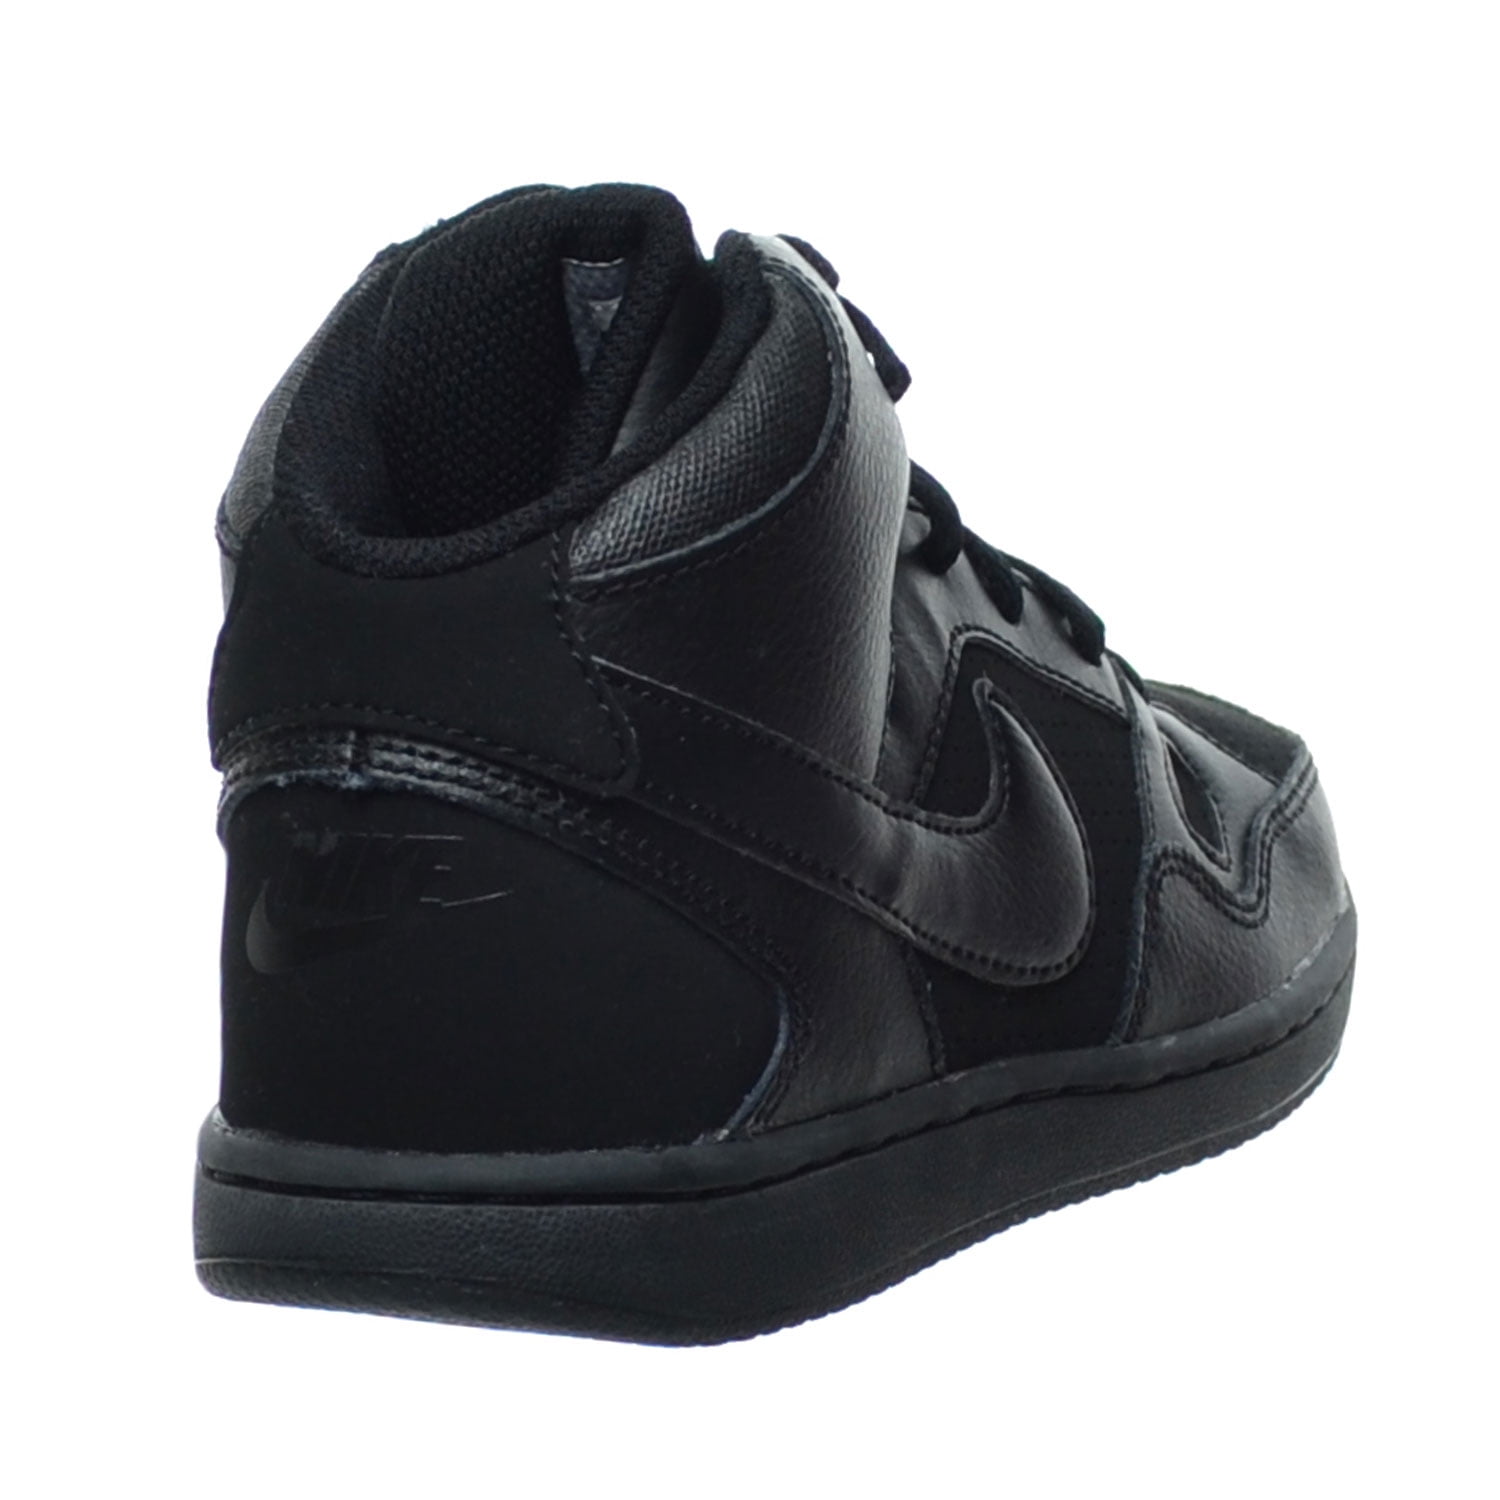 Son Force MID (PS) Little Kid's Shoes Black/Black 615161-021 Walmart.com